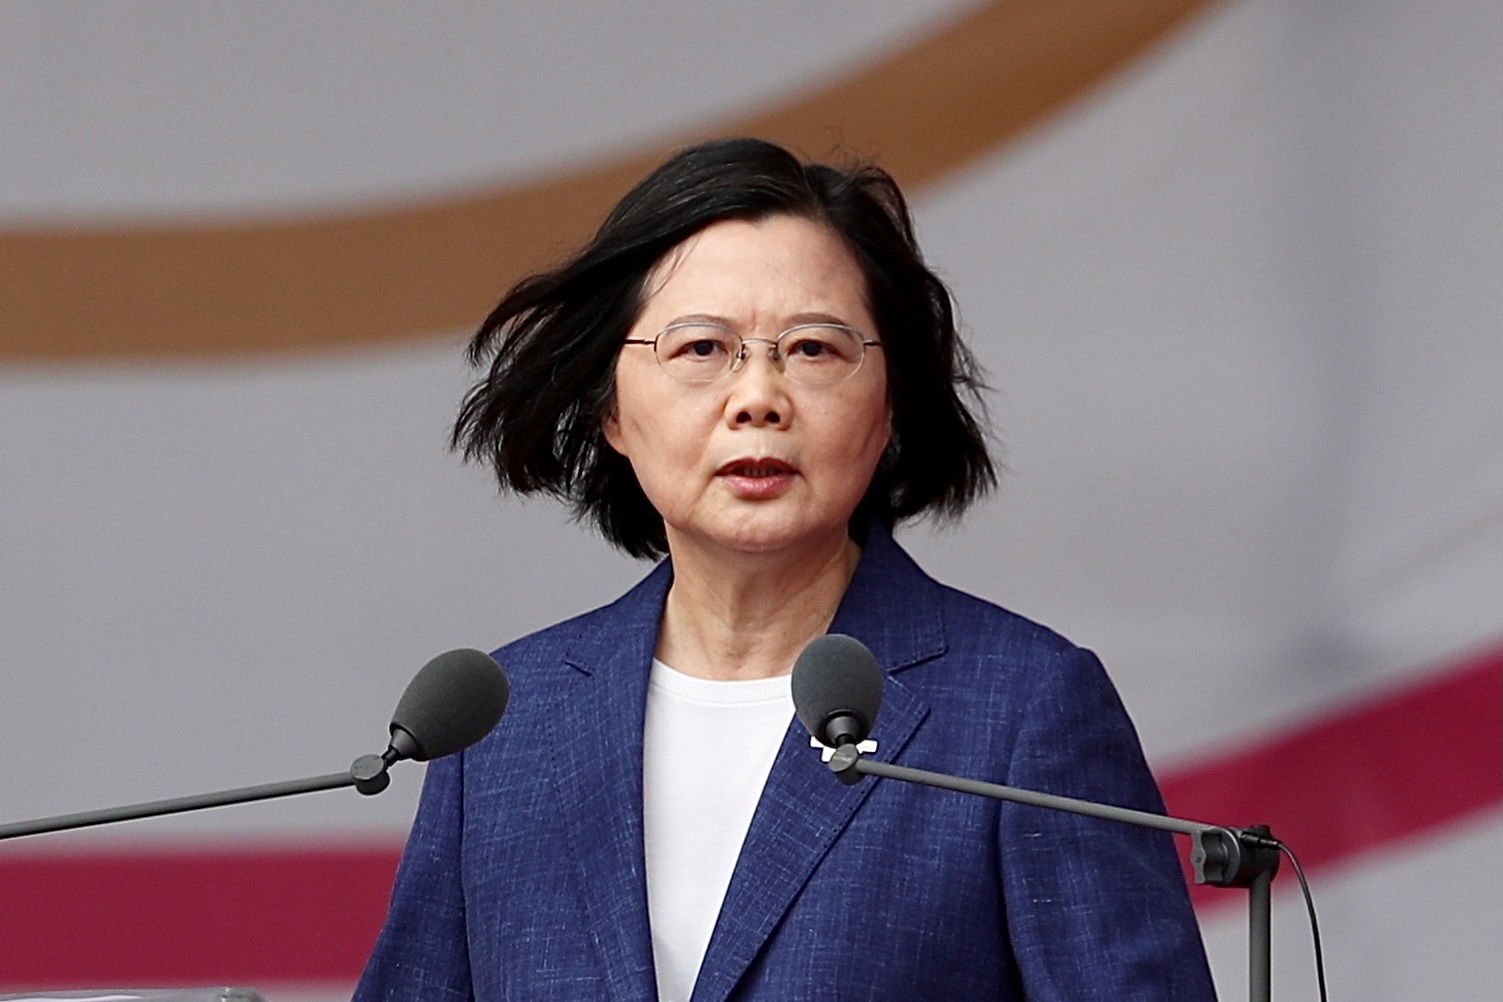 La presidenta de Taiwán, Tsai Ing-wen, confirmó por primera vez que Estados Unidos tiene una presencia militar en la isla "para entrenar a las tropas taiwanesas". (EFE/EPA/RITCHIE B. TONGO)